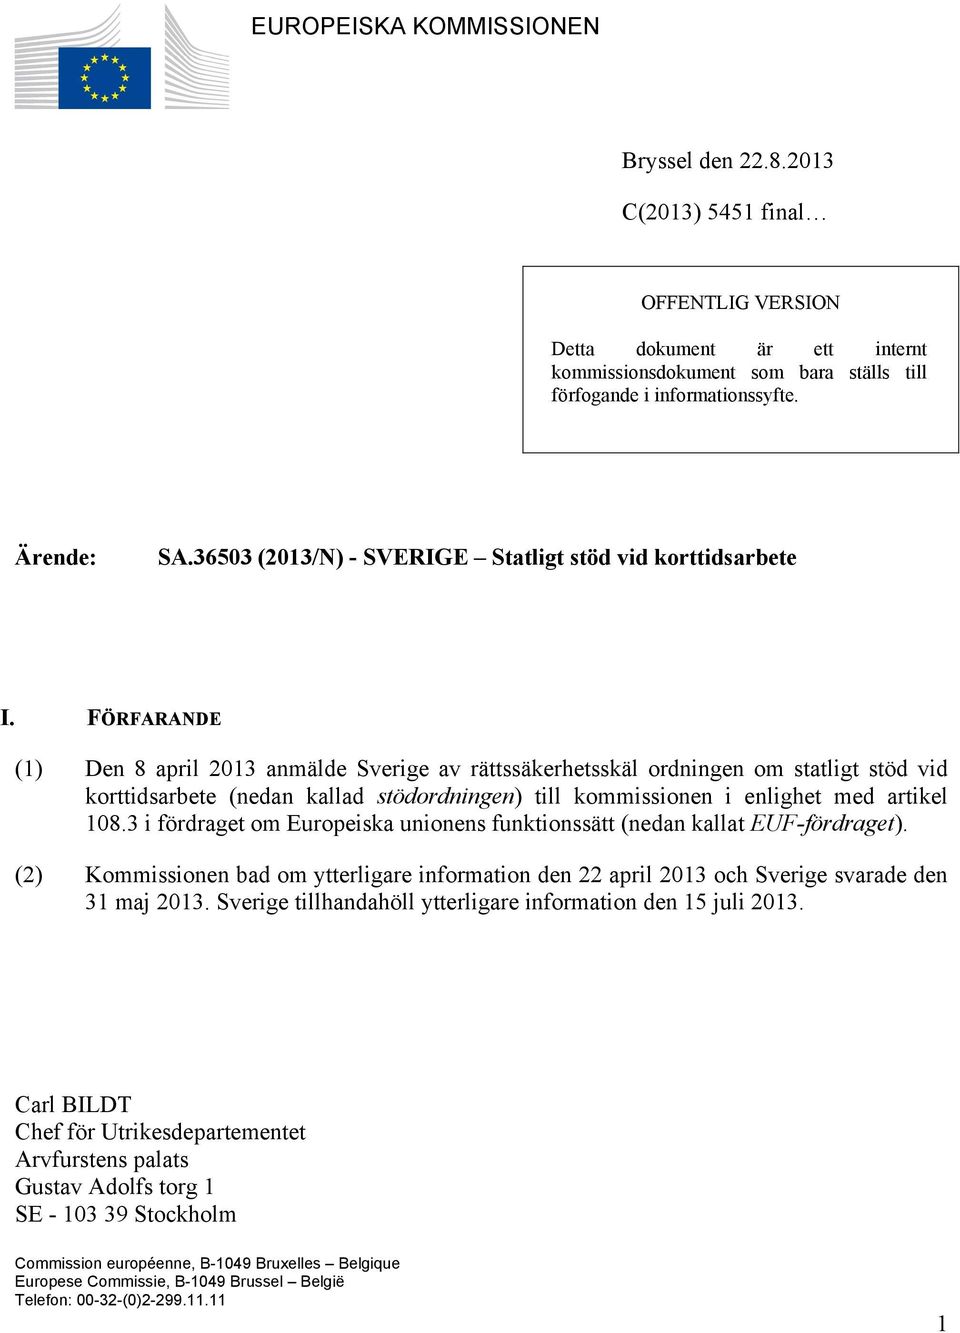 FÖRFARANDE (1) Den 8 april 2013 anmälde Sverige av rättssäkerhetsskäl ordningen om statligt stöd vid korttidsarbete (nedan kallad stödordningen) till kommissionen i enlighet med artikel 108.